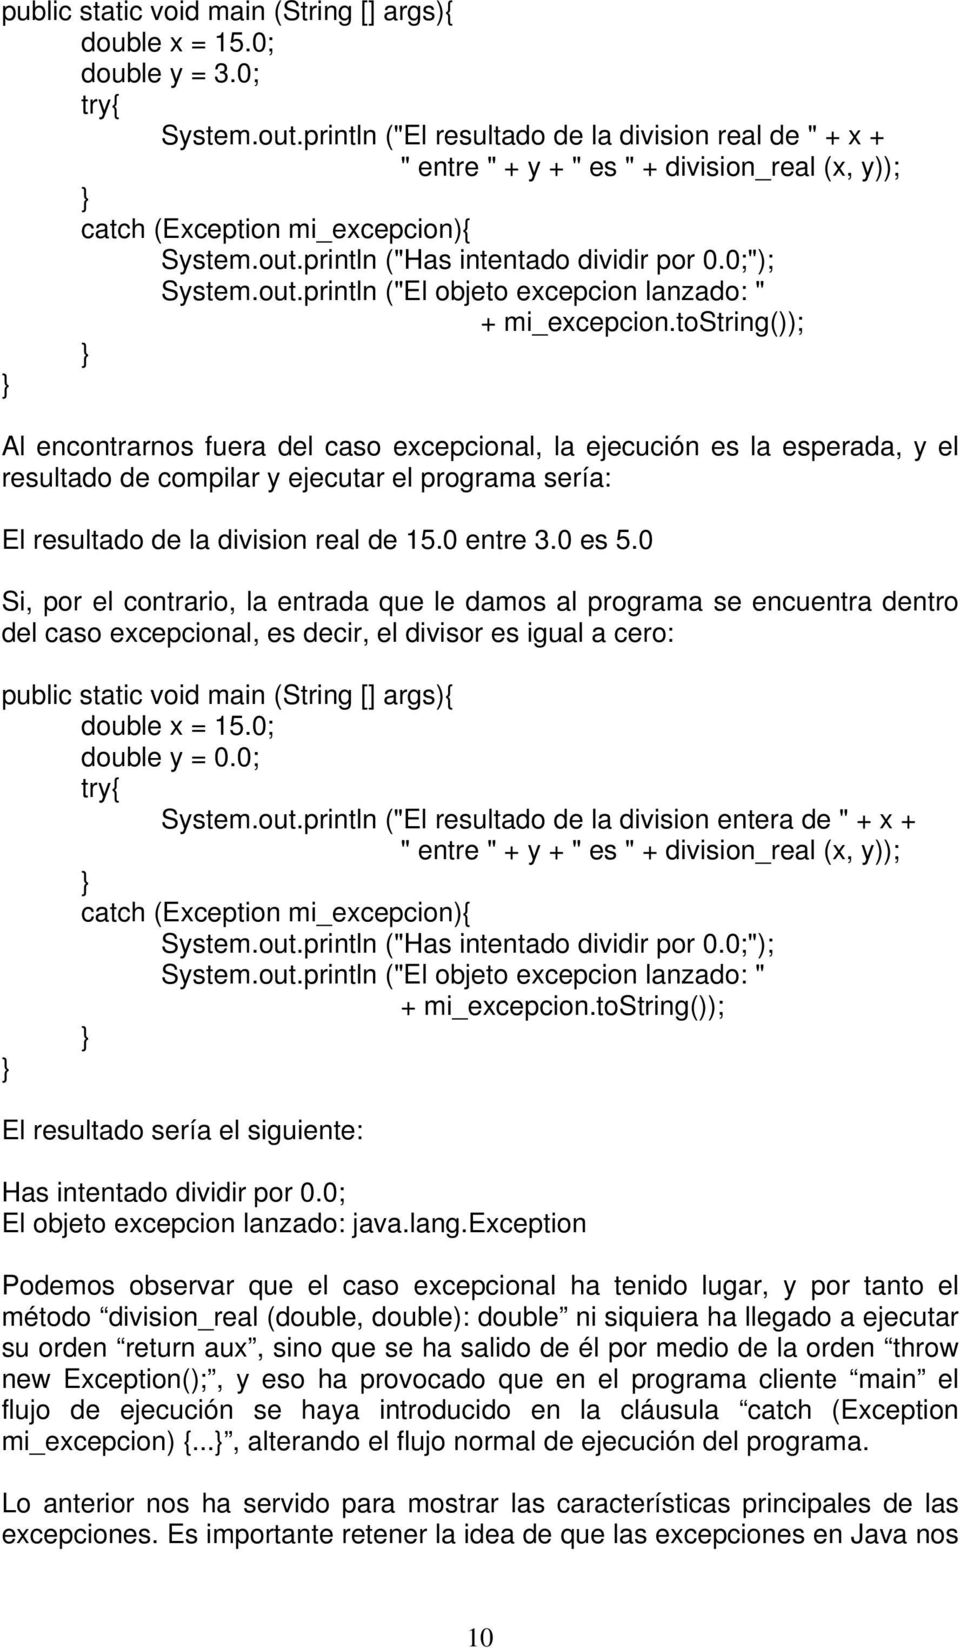 println ("Has intentado dividir por 0.0;"); System.out.println ("El objeto excepcion lanzado: " + mi_excepcion.